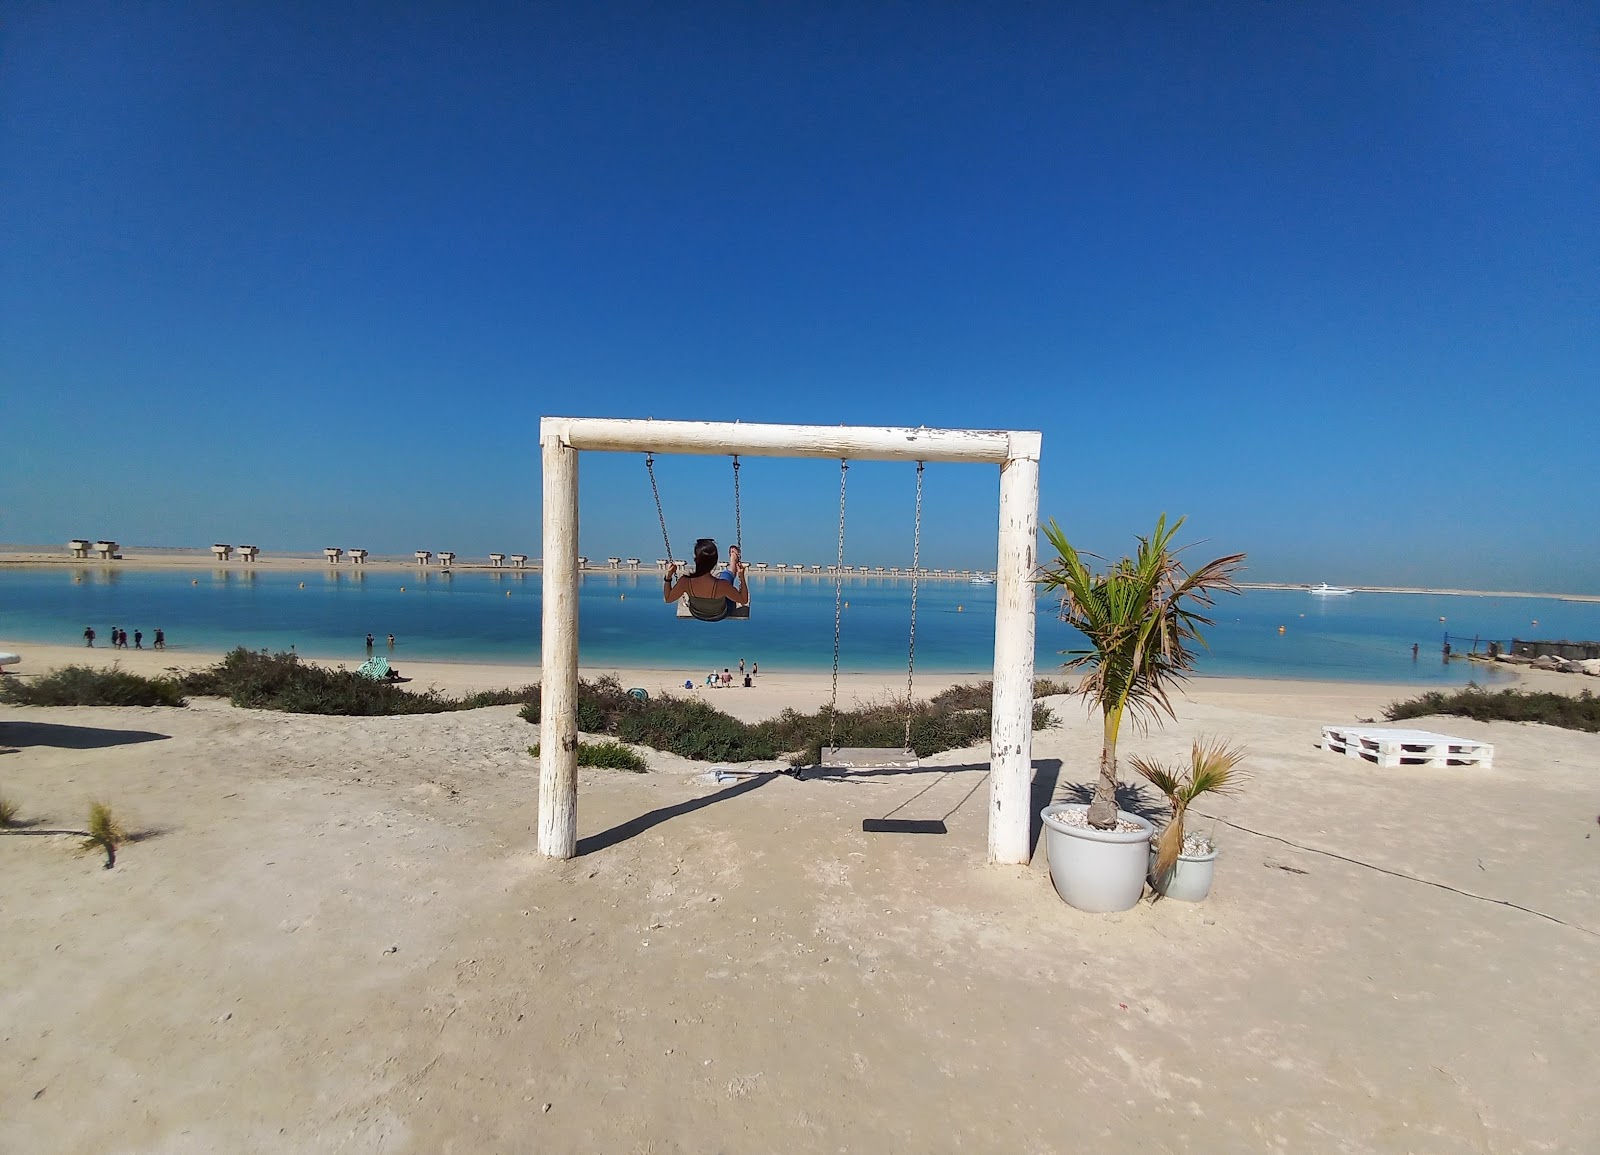 Jebel Ali Beach'in fotoğrafı - tatil için iyi evcil hayvan dostu nokta